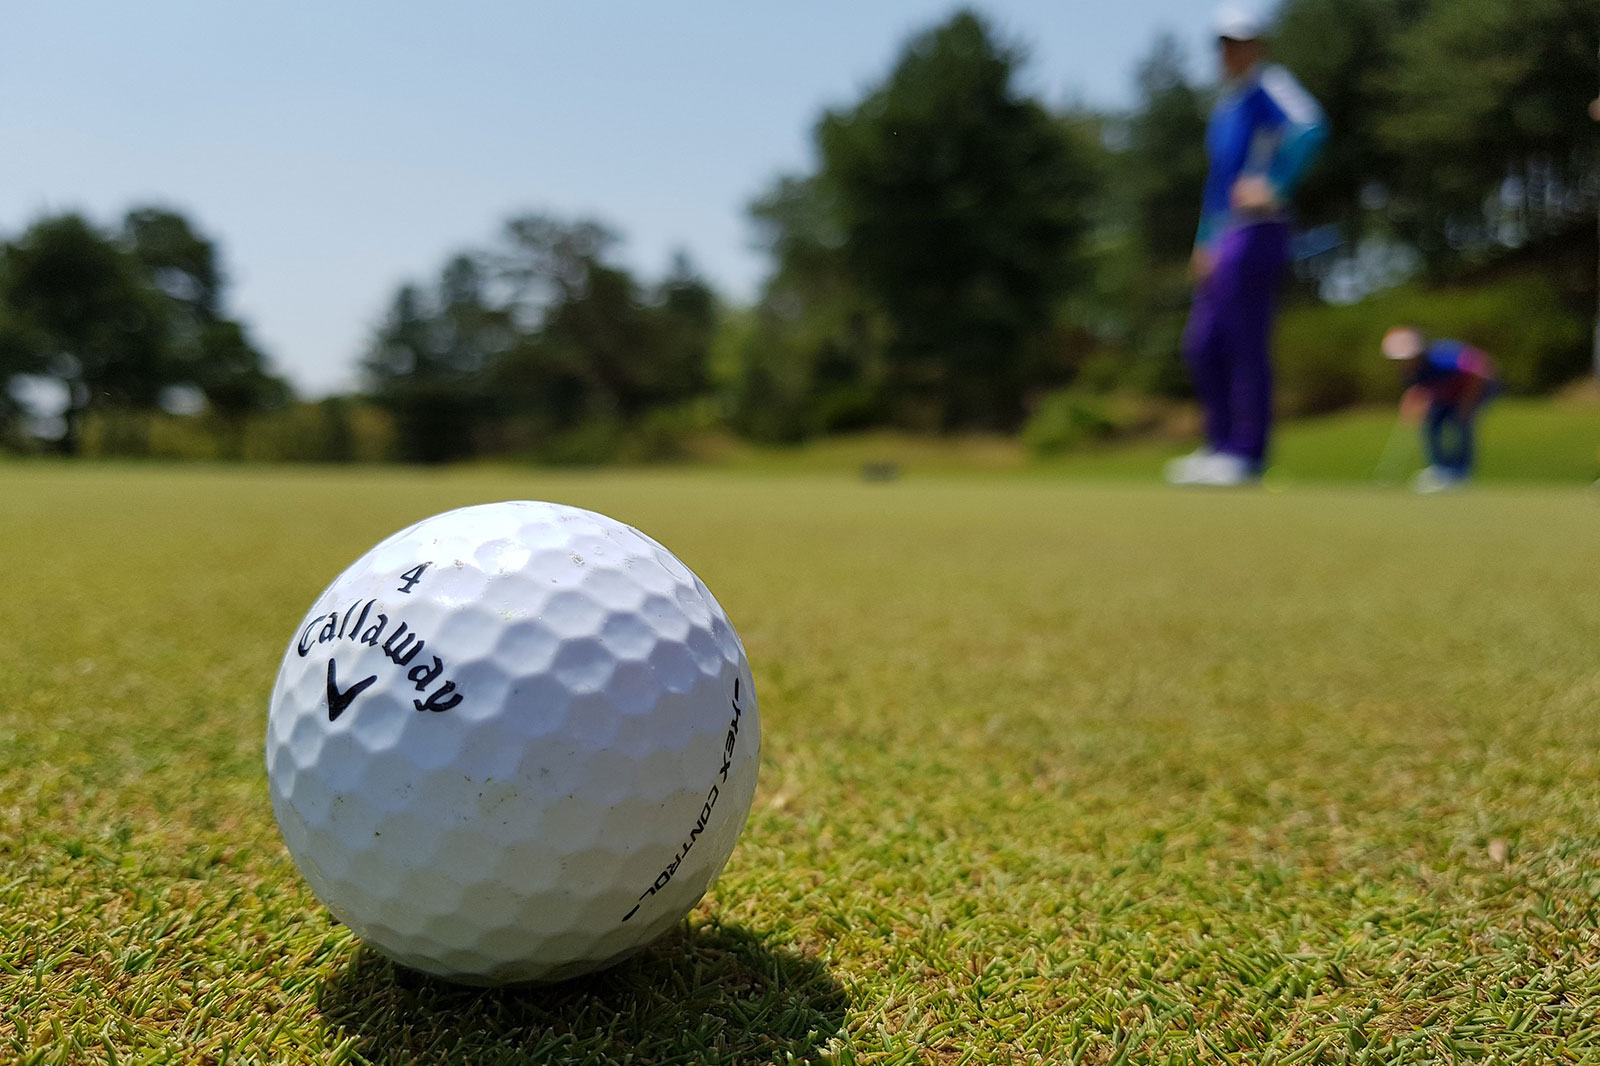 Kenosha County golf courses to open for the 2022 season - Kenosha.com